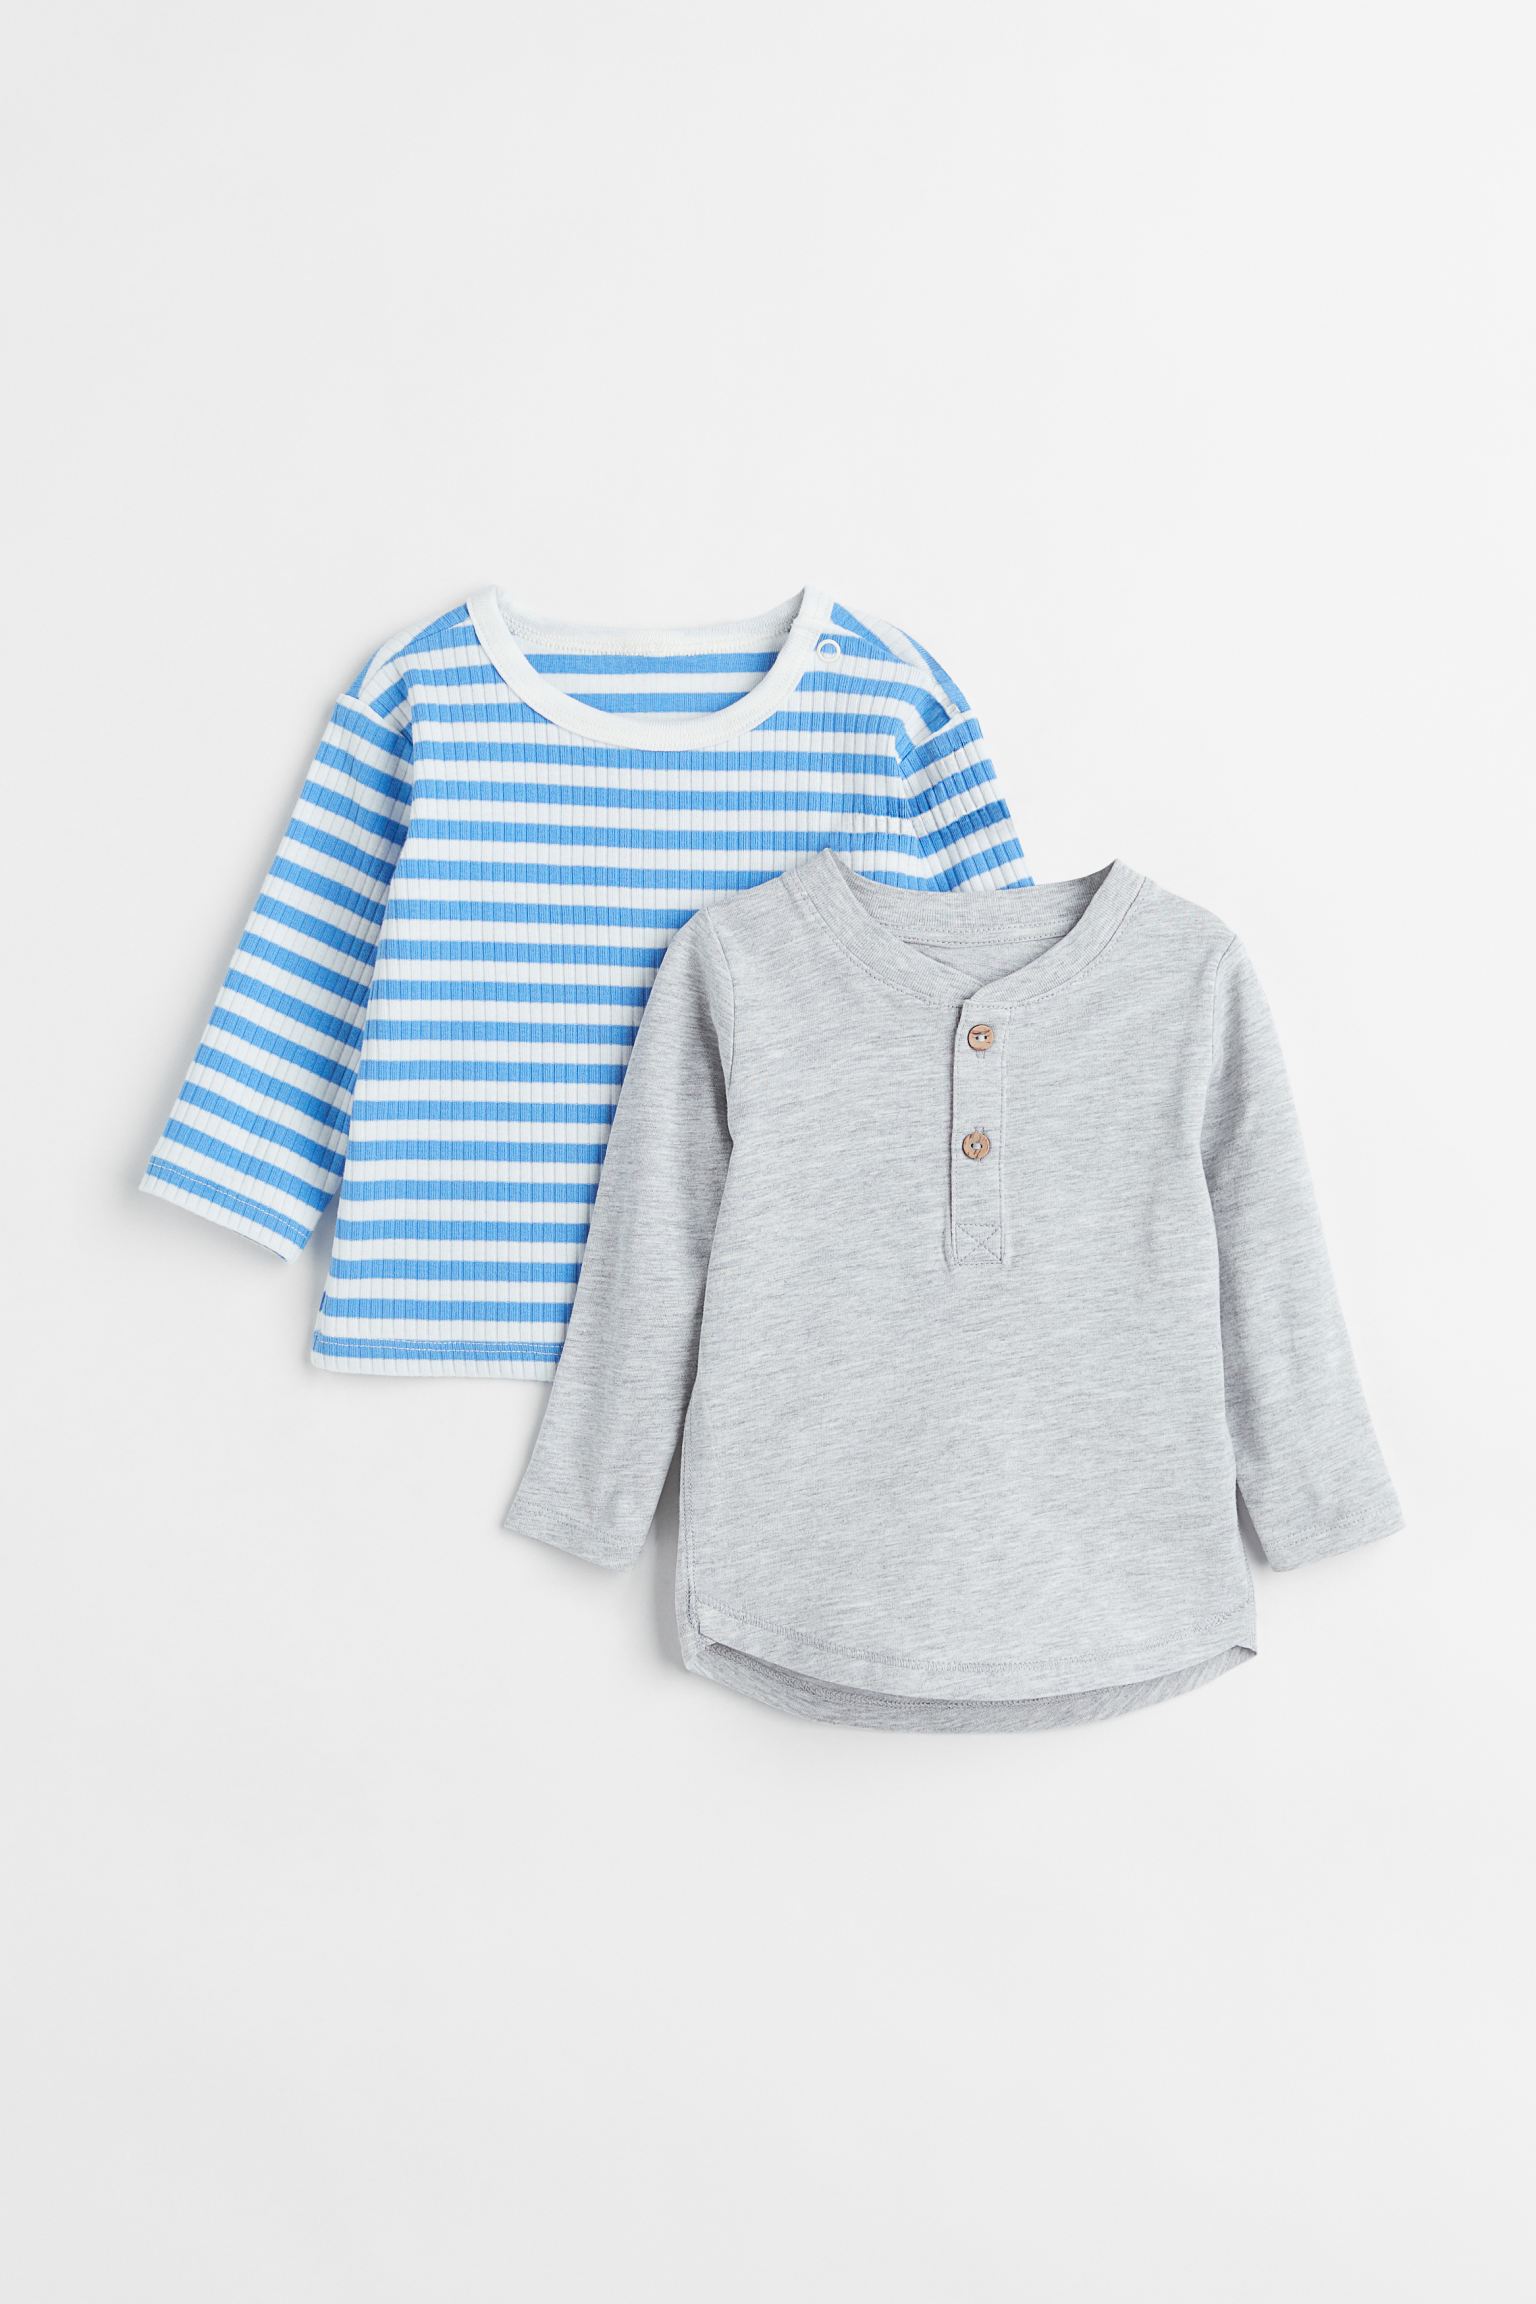 Комплект фуфаек H&M для малышей, голубой, серый-019, размер 92, 767181019, 2 шт.